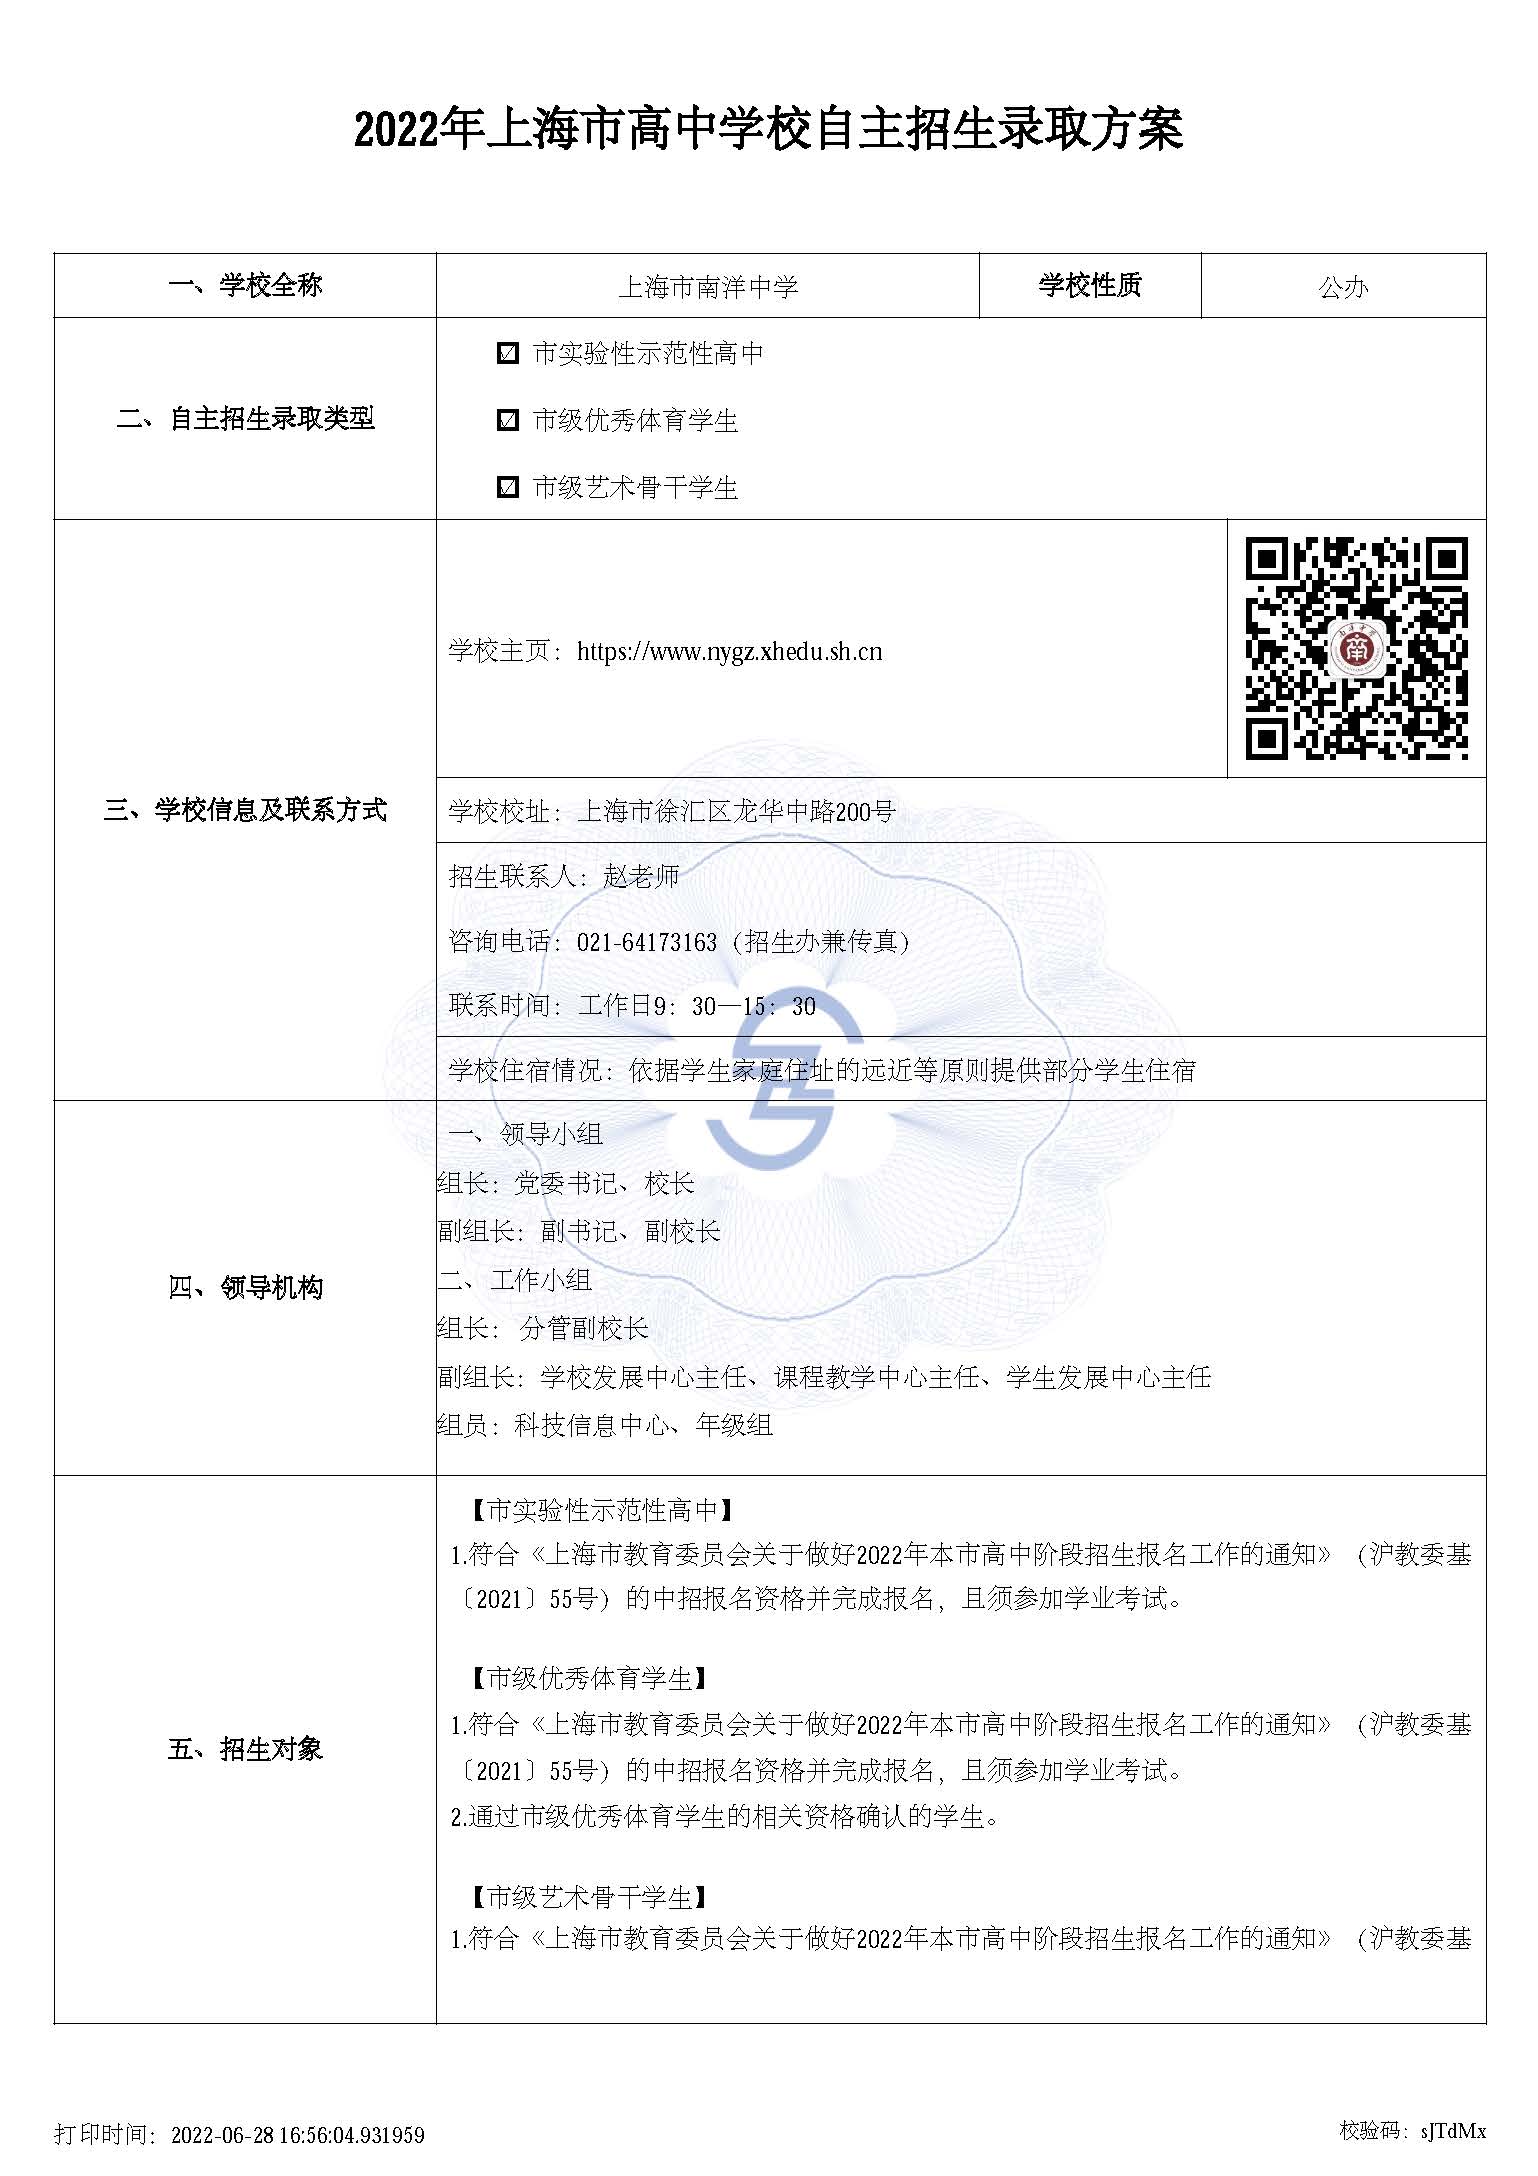 上海市南洋中学高中自主招生方案_页面_1.jpg